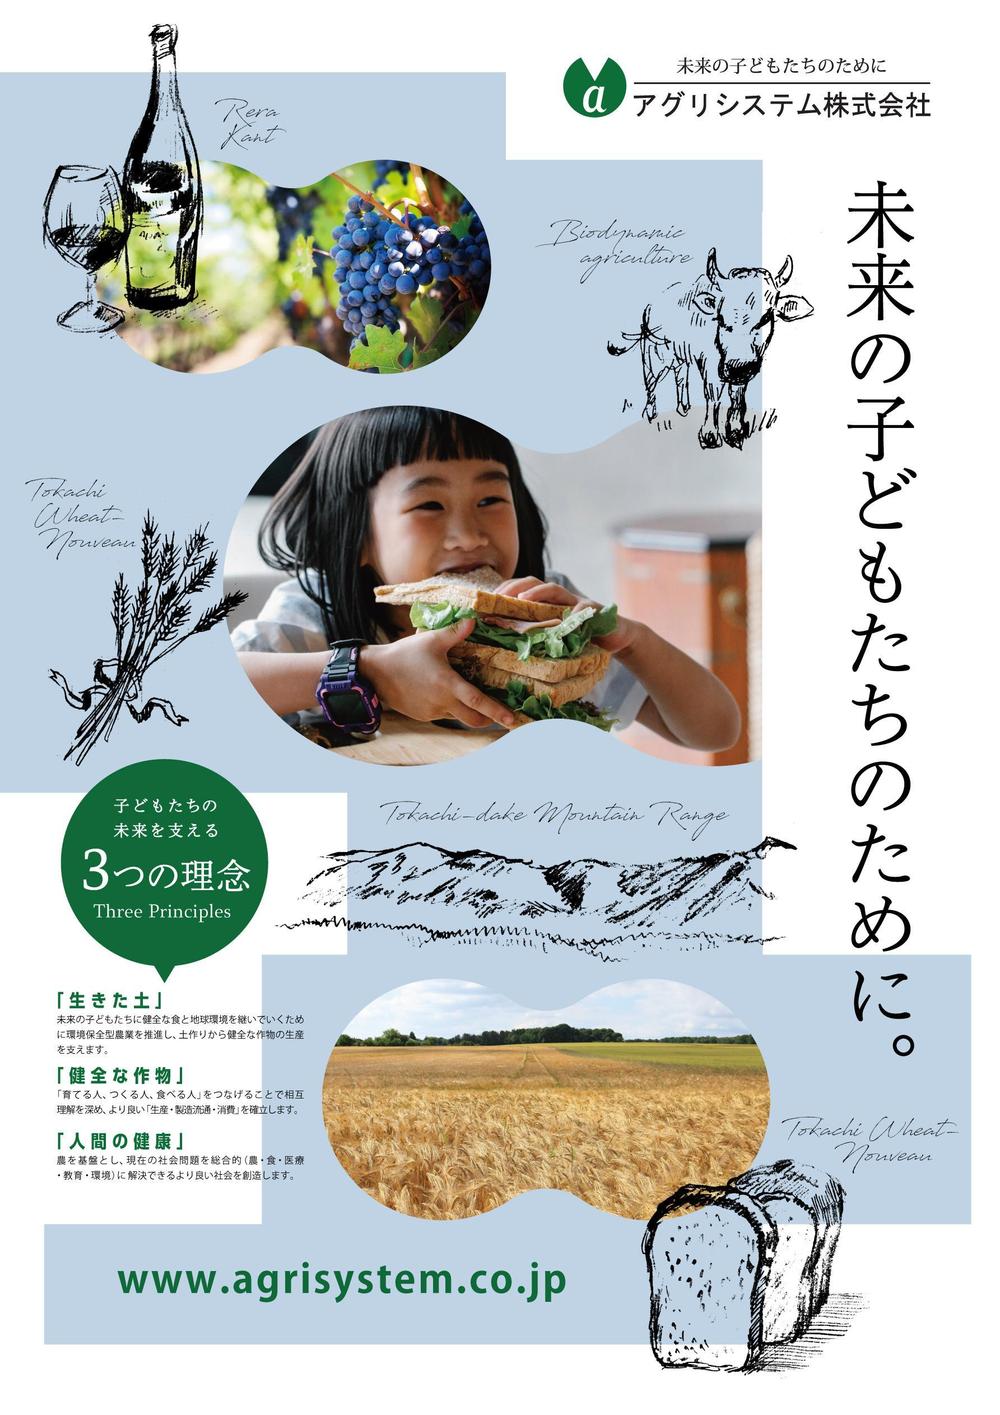 「未来の子どもたちのために」農産物卸売業「アグリシステム㈱」会社パンフレット